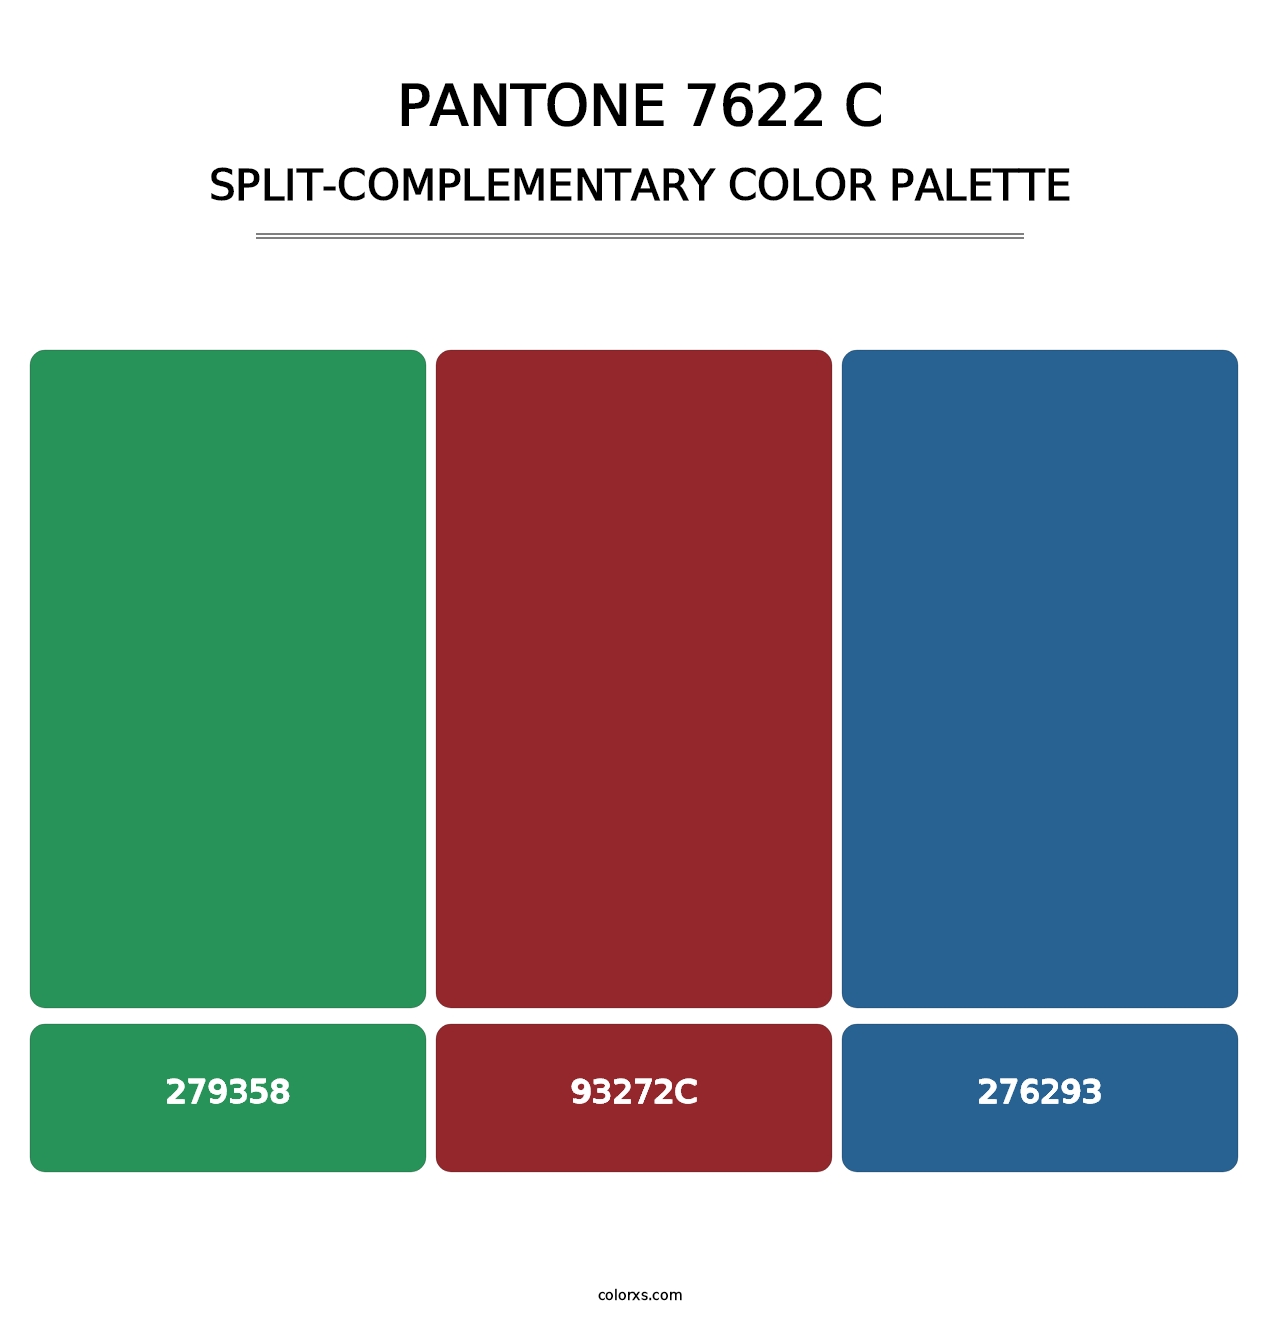 PANTONE 7622 C - Split-Complementary Color Palette